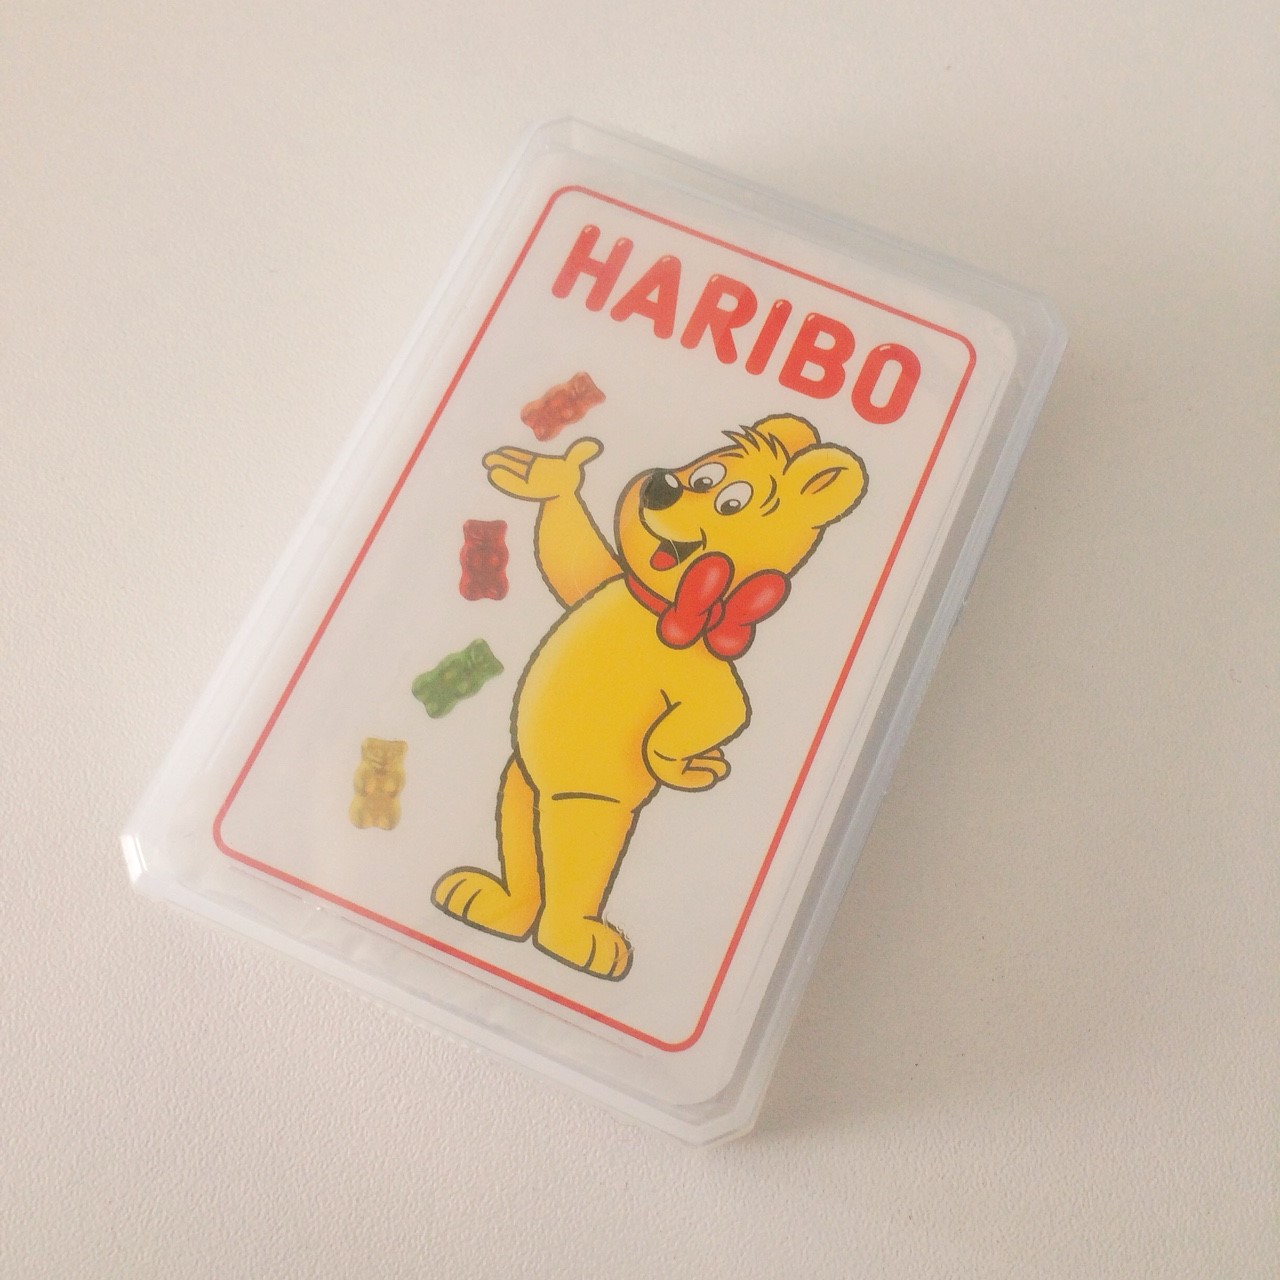 Haribo ドイツのグミ ハリボーの直営店 アウトレット でお得にショッピング タビシタ